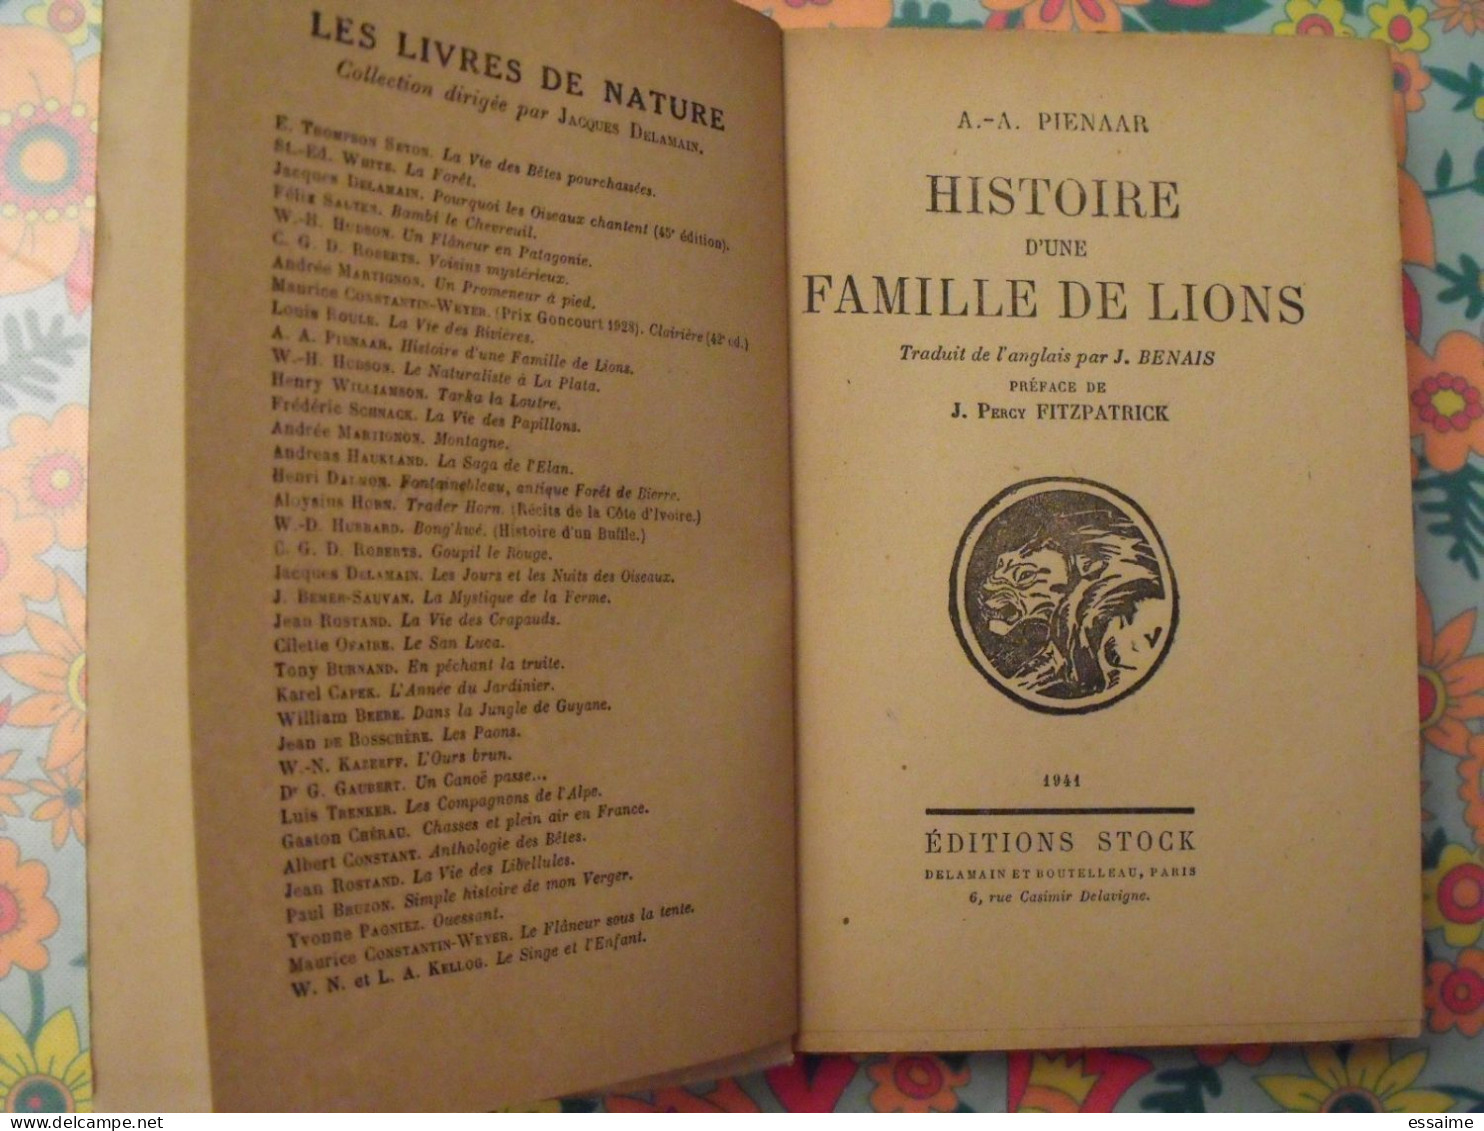 Histoire D'une Famille De Lions. Pienaar. Stock 1941. Delamain. Fitzpatrick - Aventure